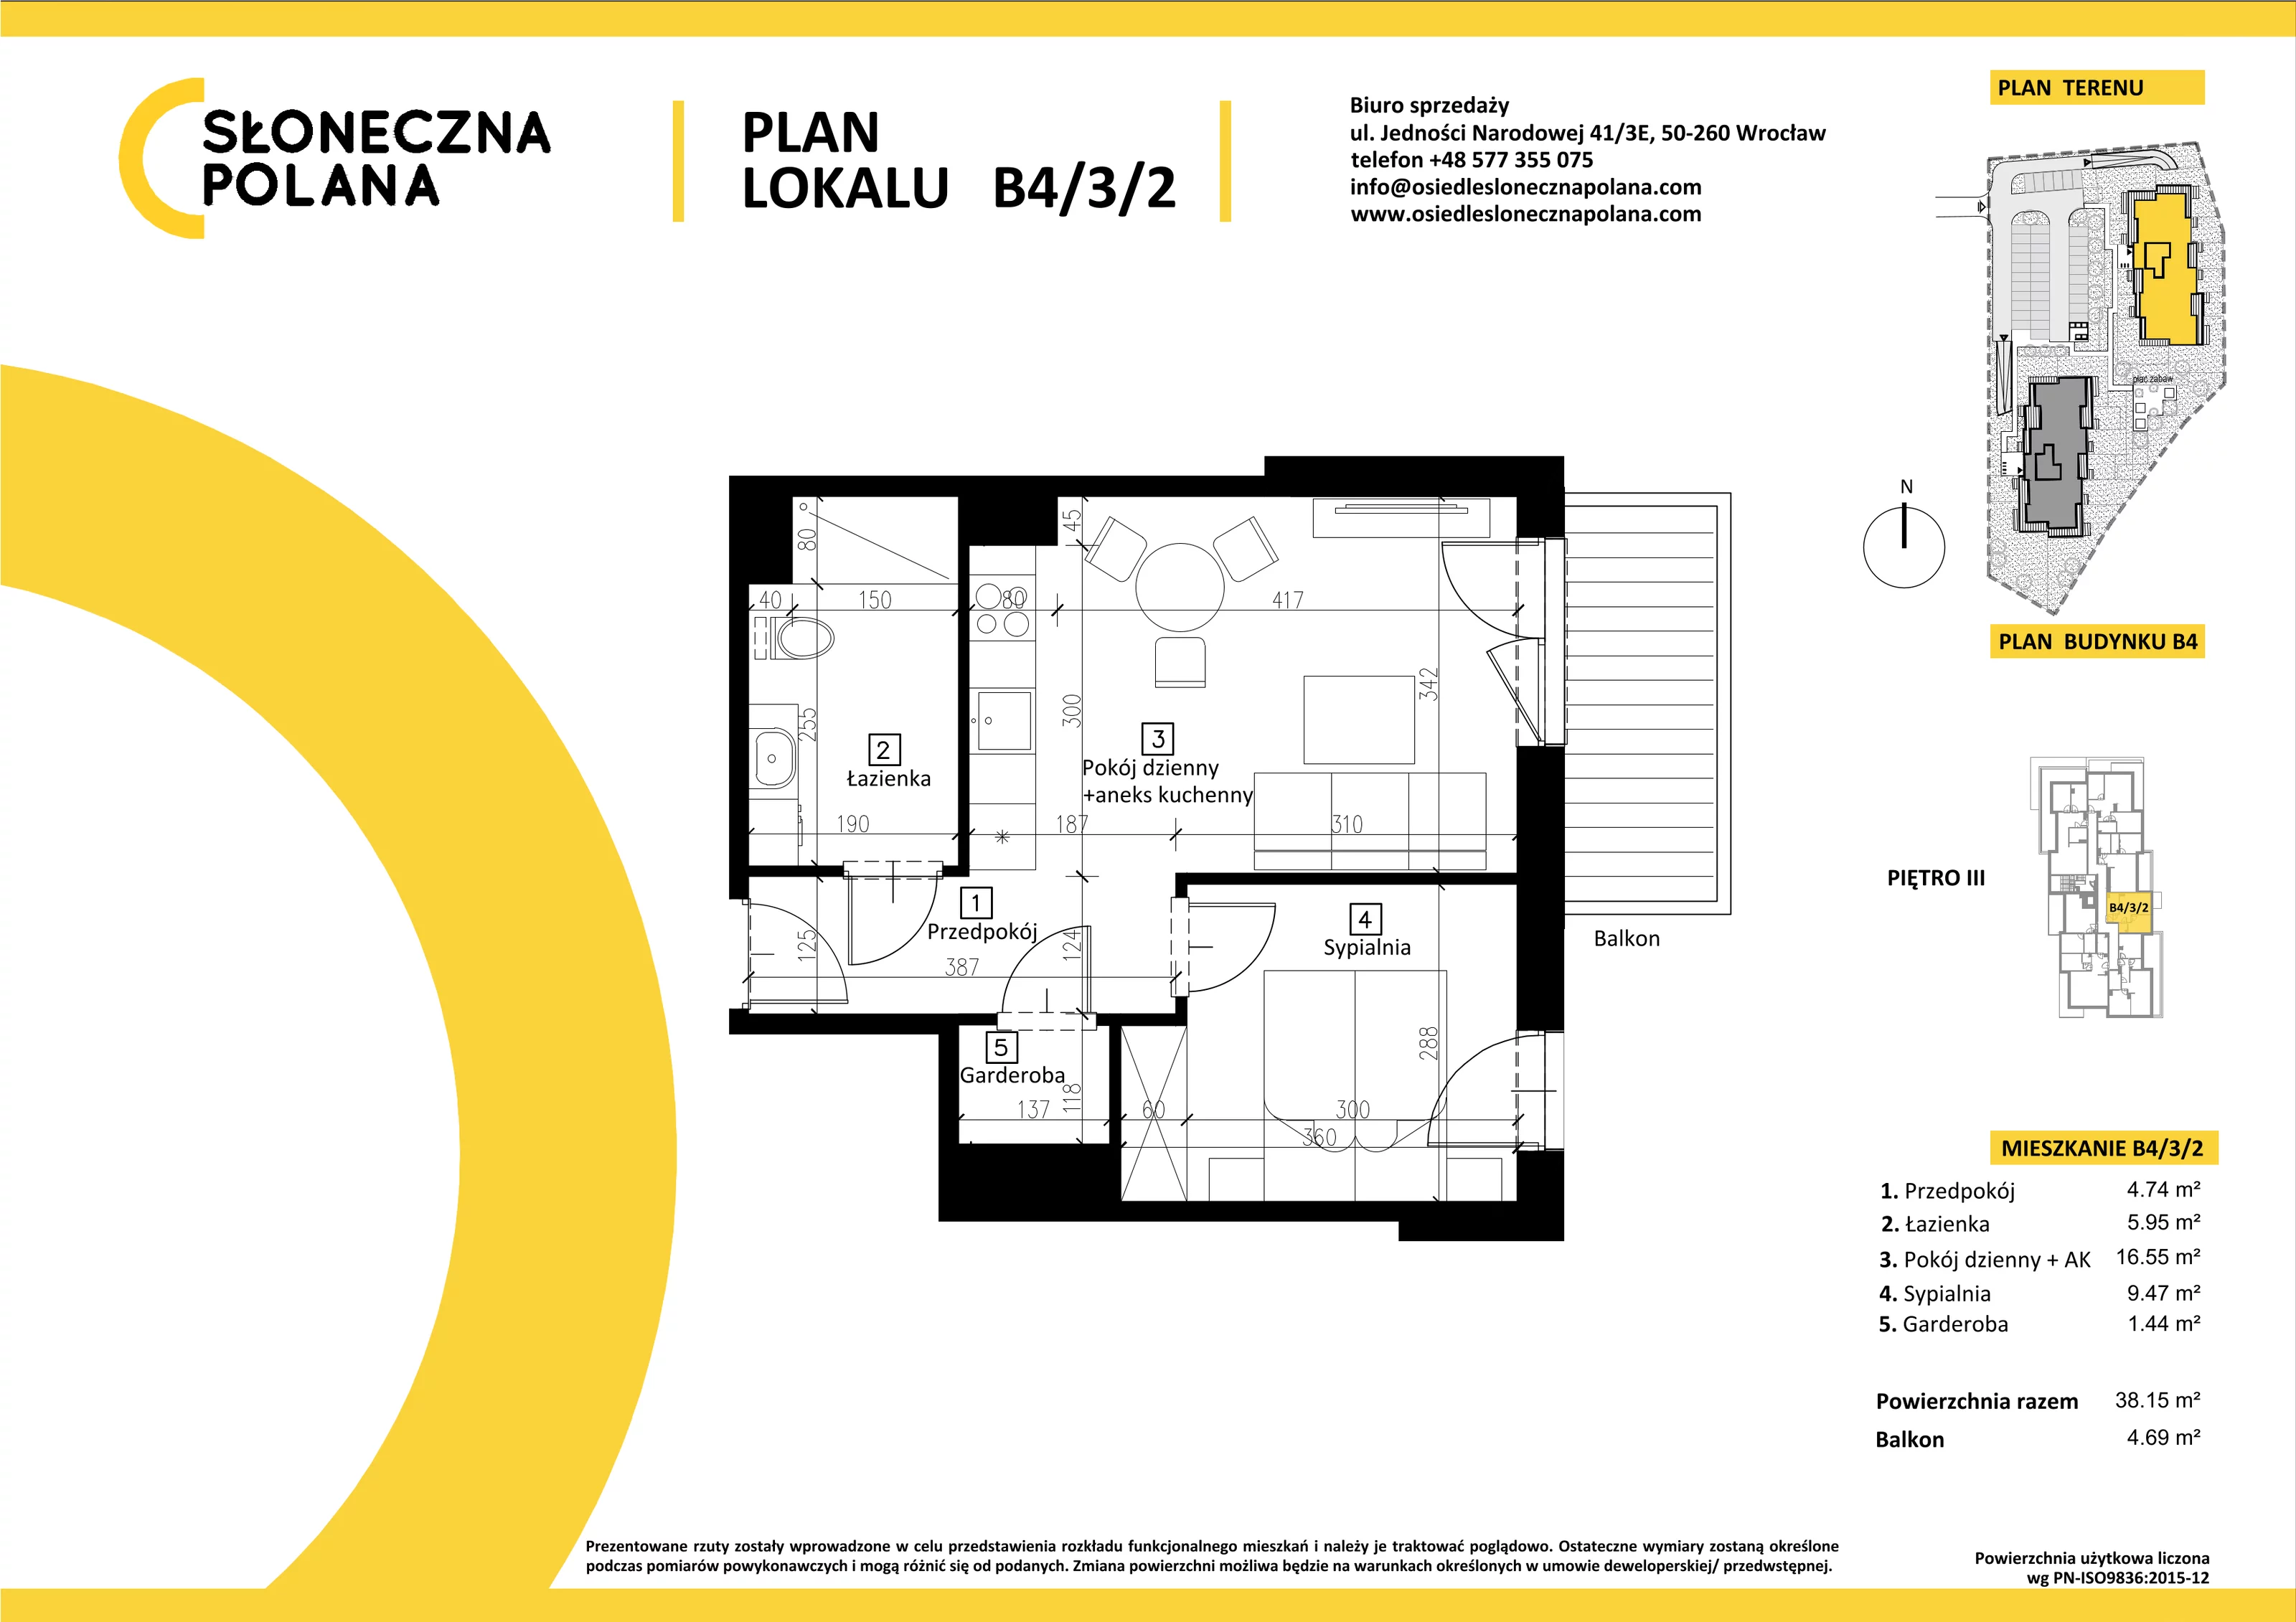 Mieszkanie 38,15 m², piętro 3, oferta nr B4/3/2, Słoneczna Polana, Kudowa-Zdrój, ul. Bluszczowa